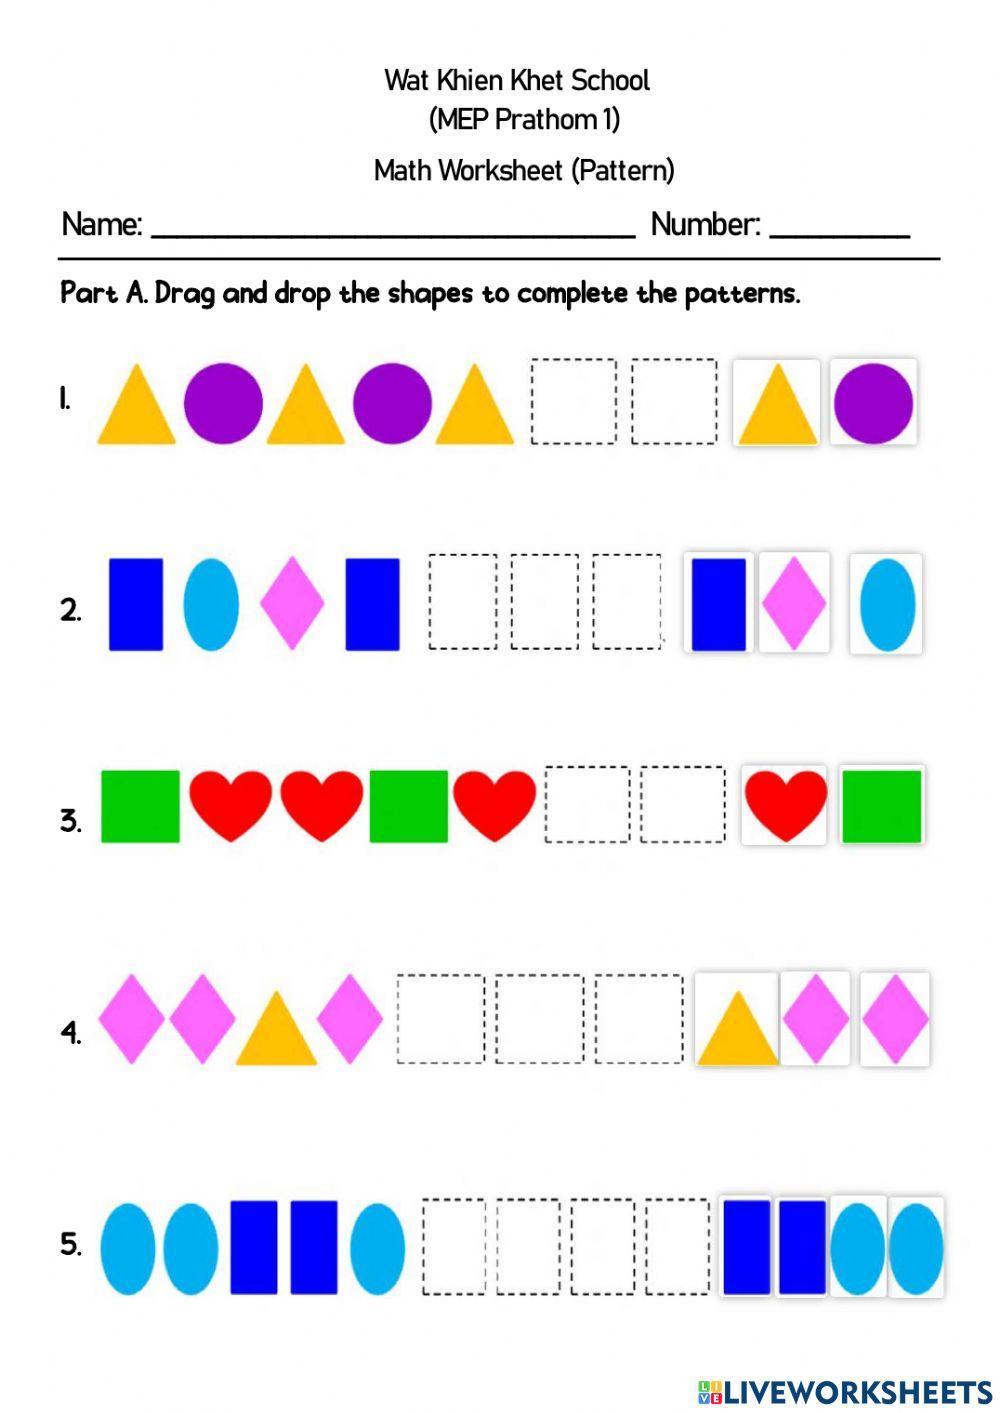 Math Worksheet Pattern